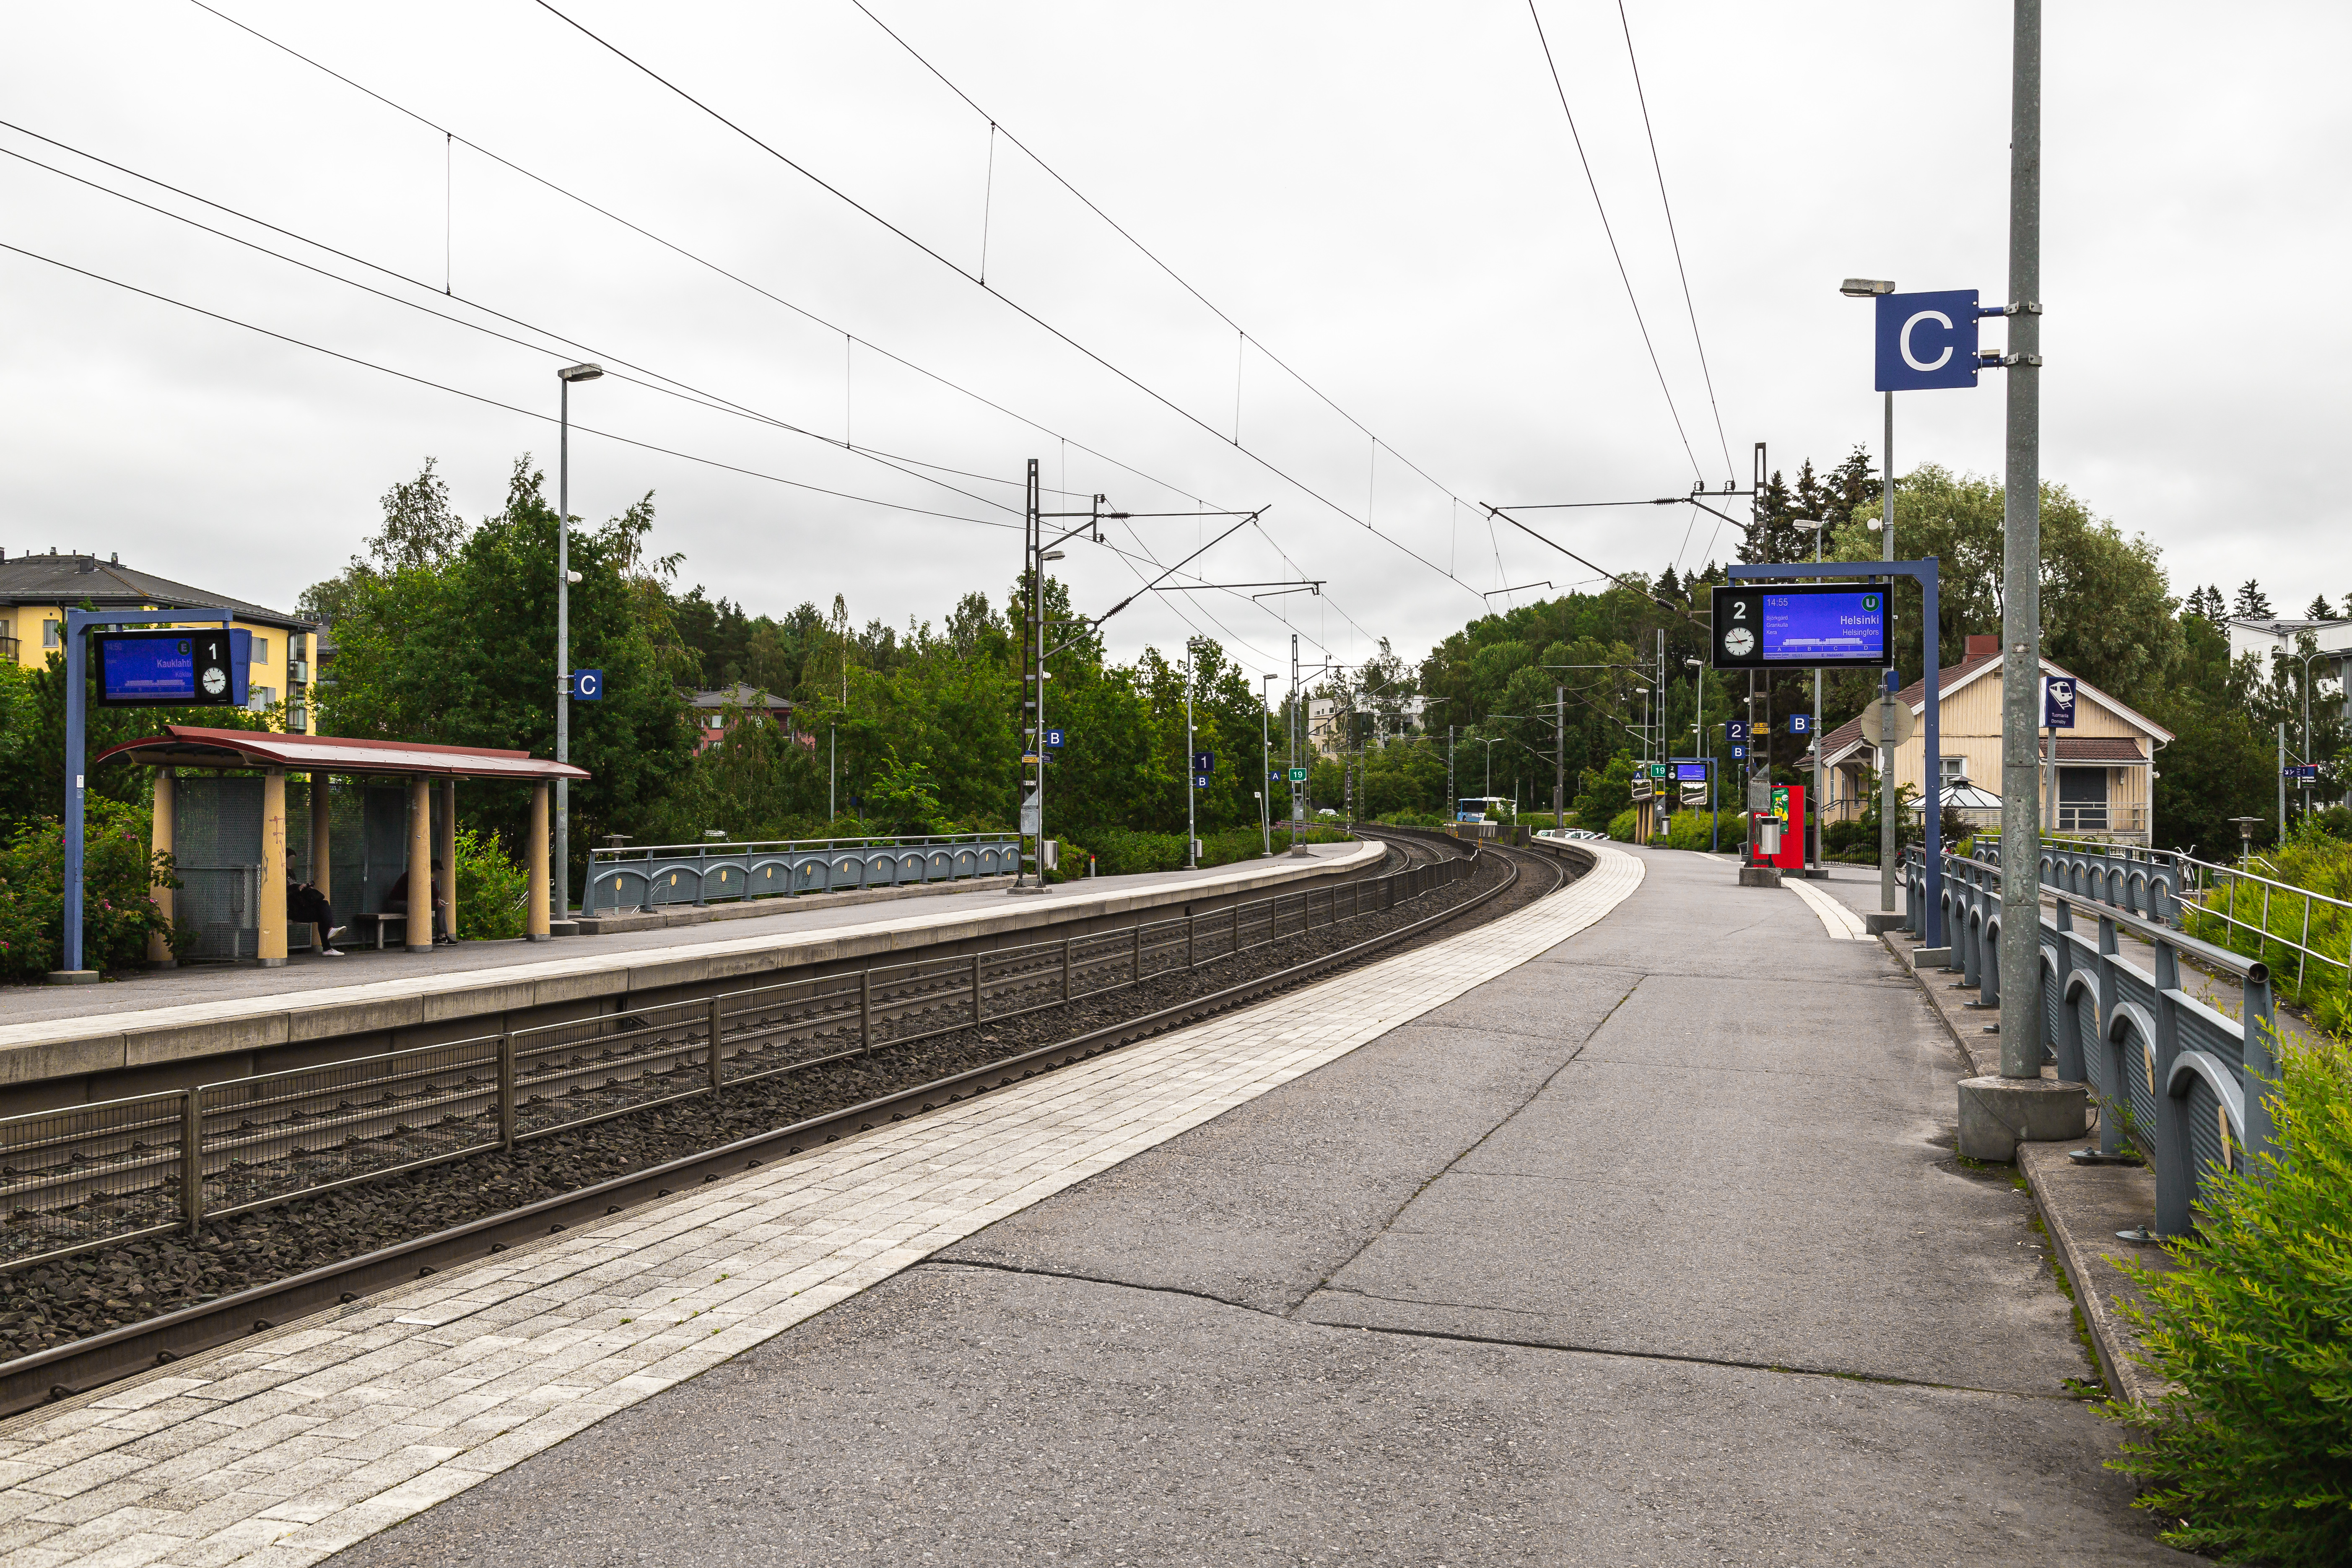 Tuomarila railway station - Wikipedia